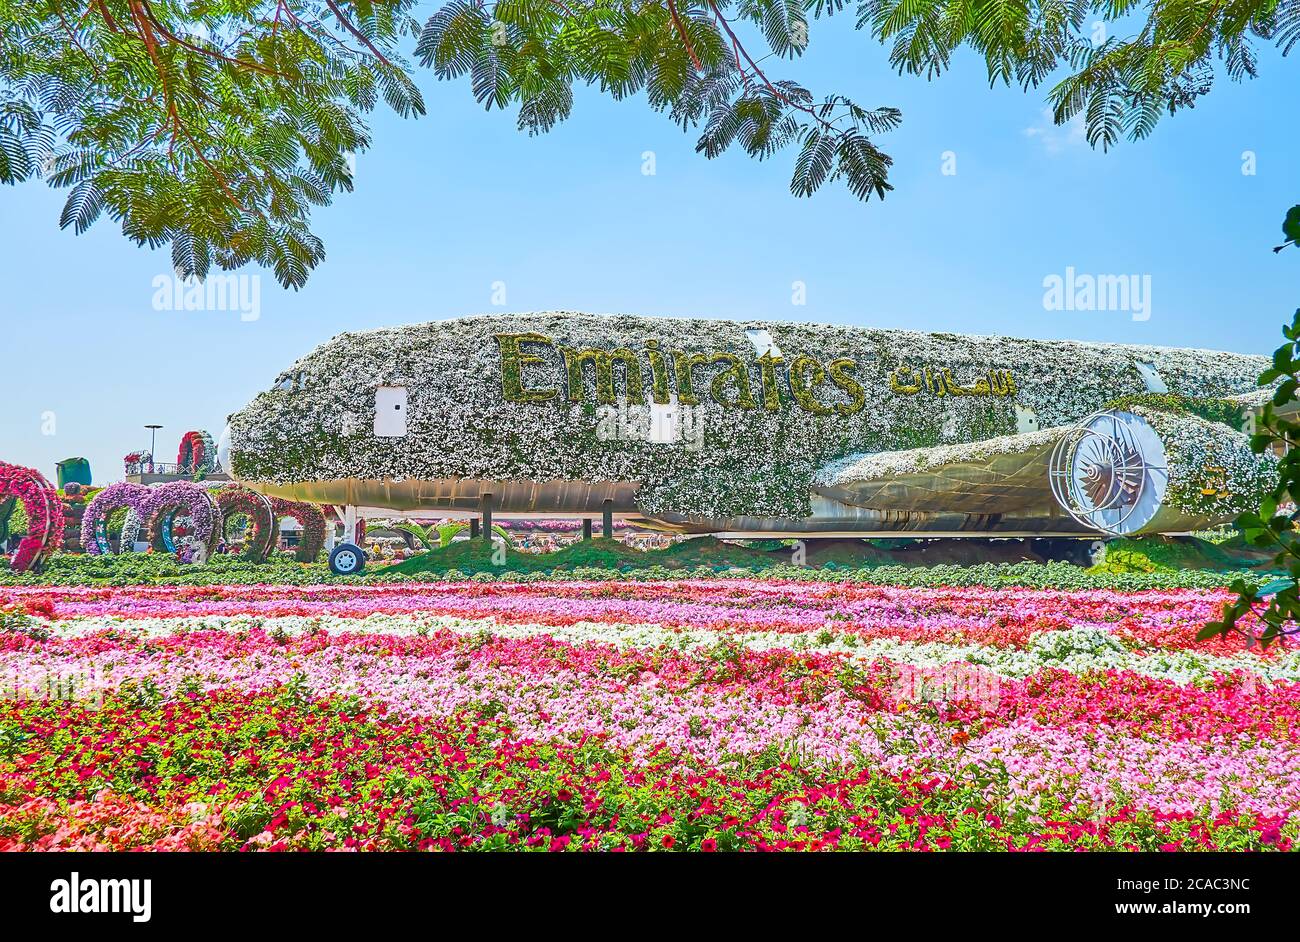 DUBAI, VAE - 5. MÄRZ 2020: Genießen Sie die einzigartige  Flugzeuginstallation, bedeckt mit Blumen und lebenden Pflanzen, die sich  zwischen Petunia-Blumenbeeten in Mirac befindet Stockfotografie - Alamy